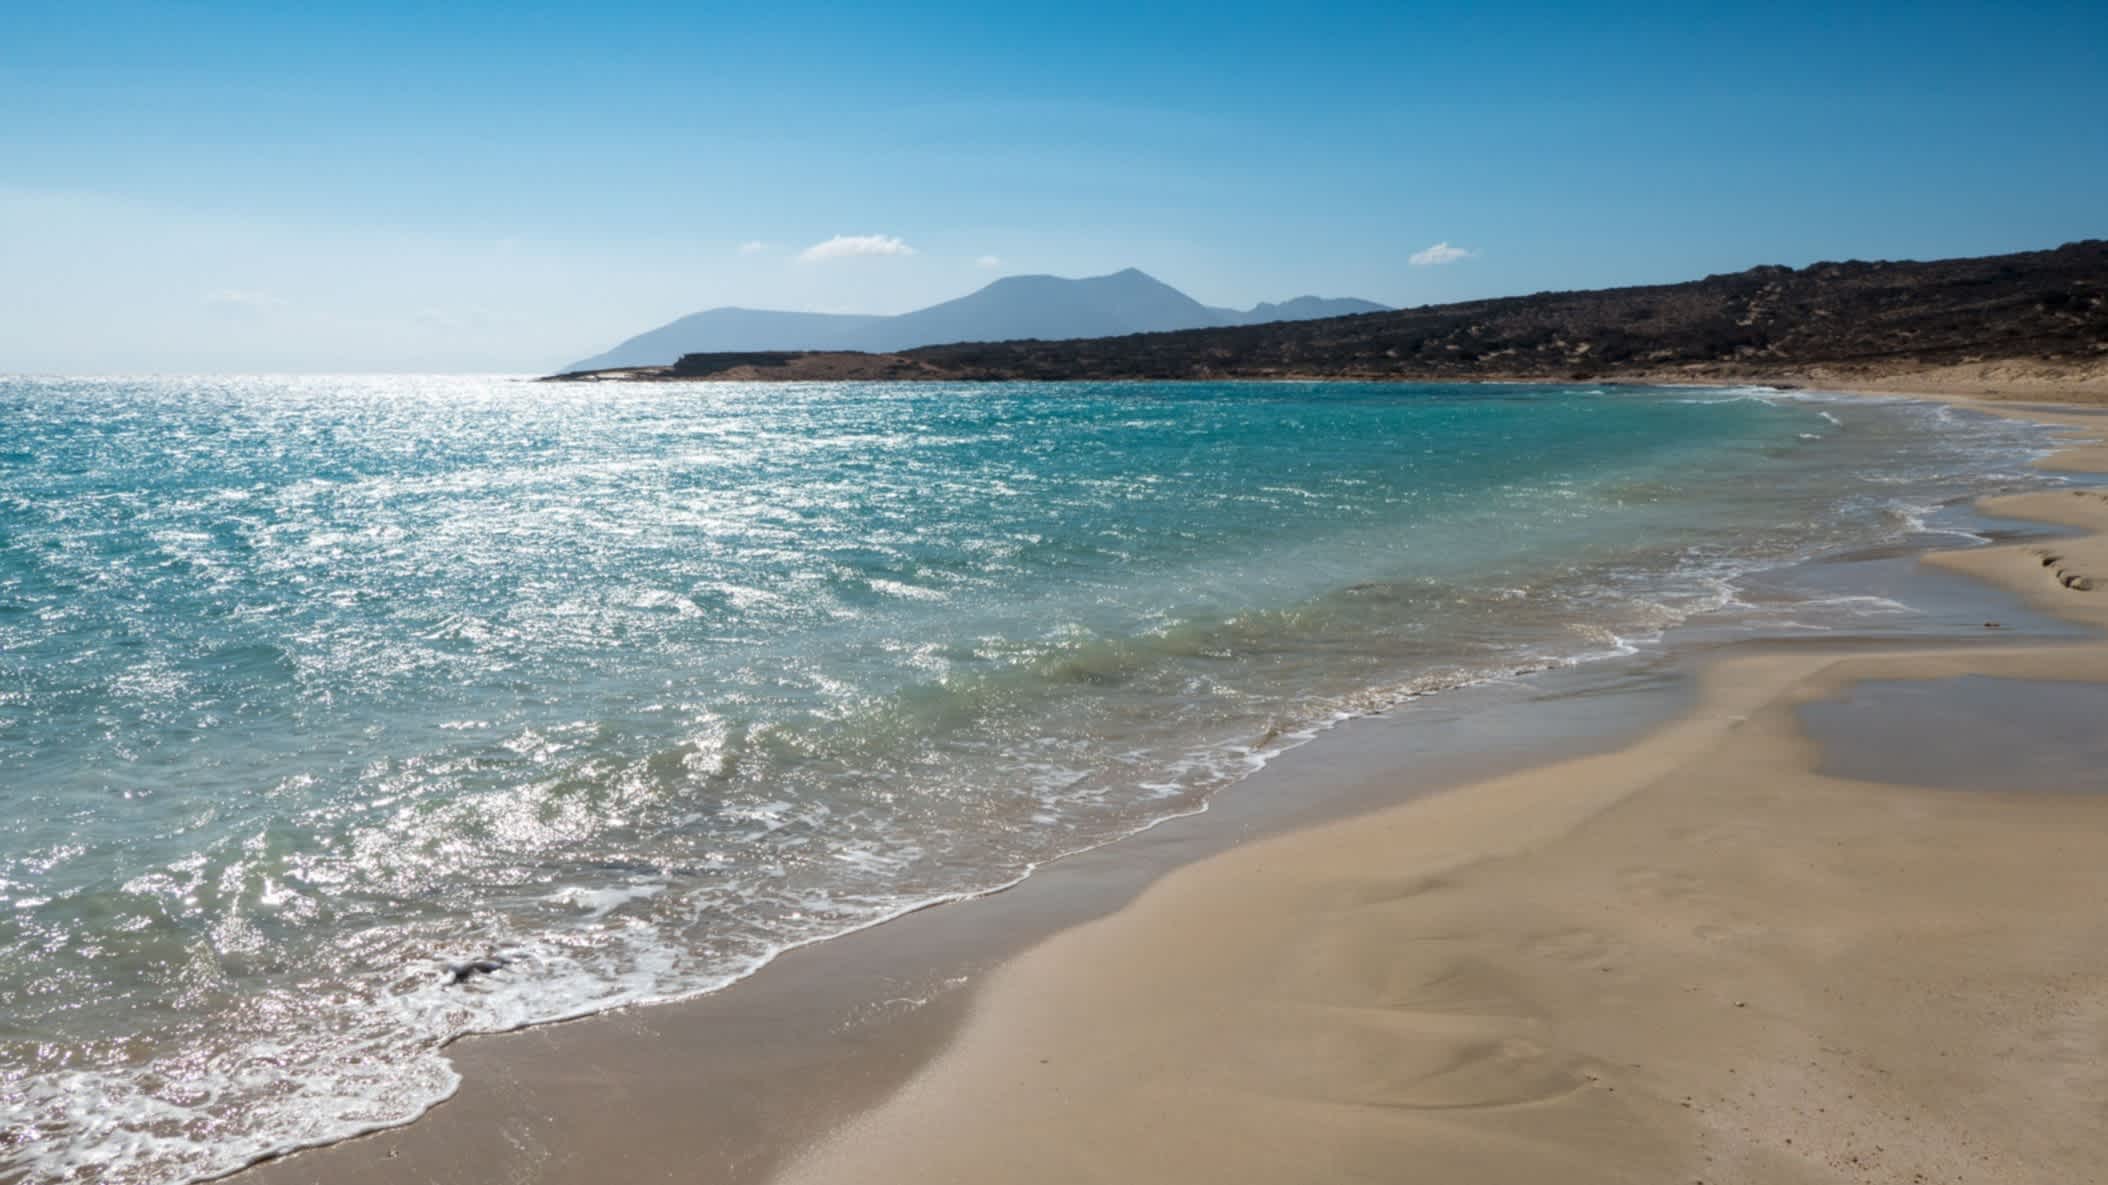 Der Pori Strand in Koufonisia, Kykladen, Griechenland mit Blick auf den goldenen Sand und das wellige blaue Meer sowie Bergen im Hintergrund.
